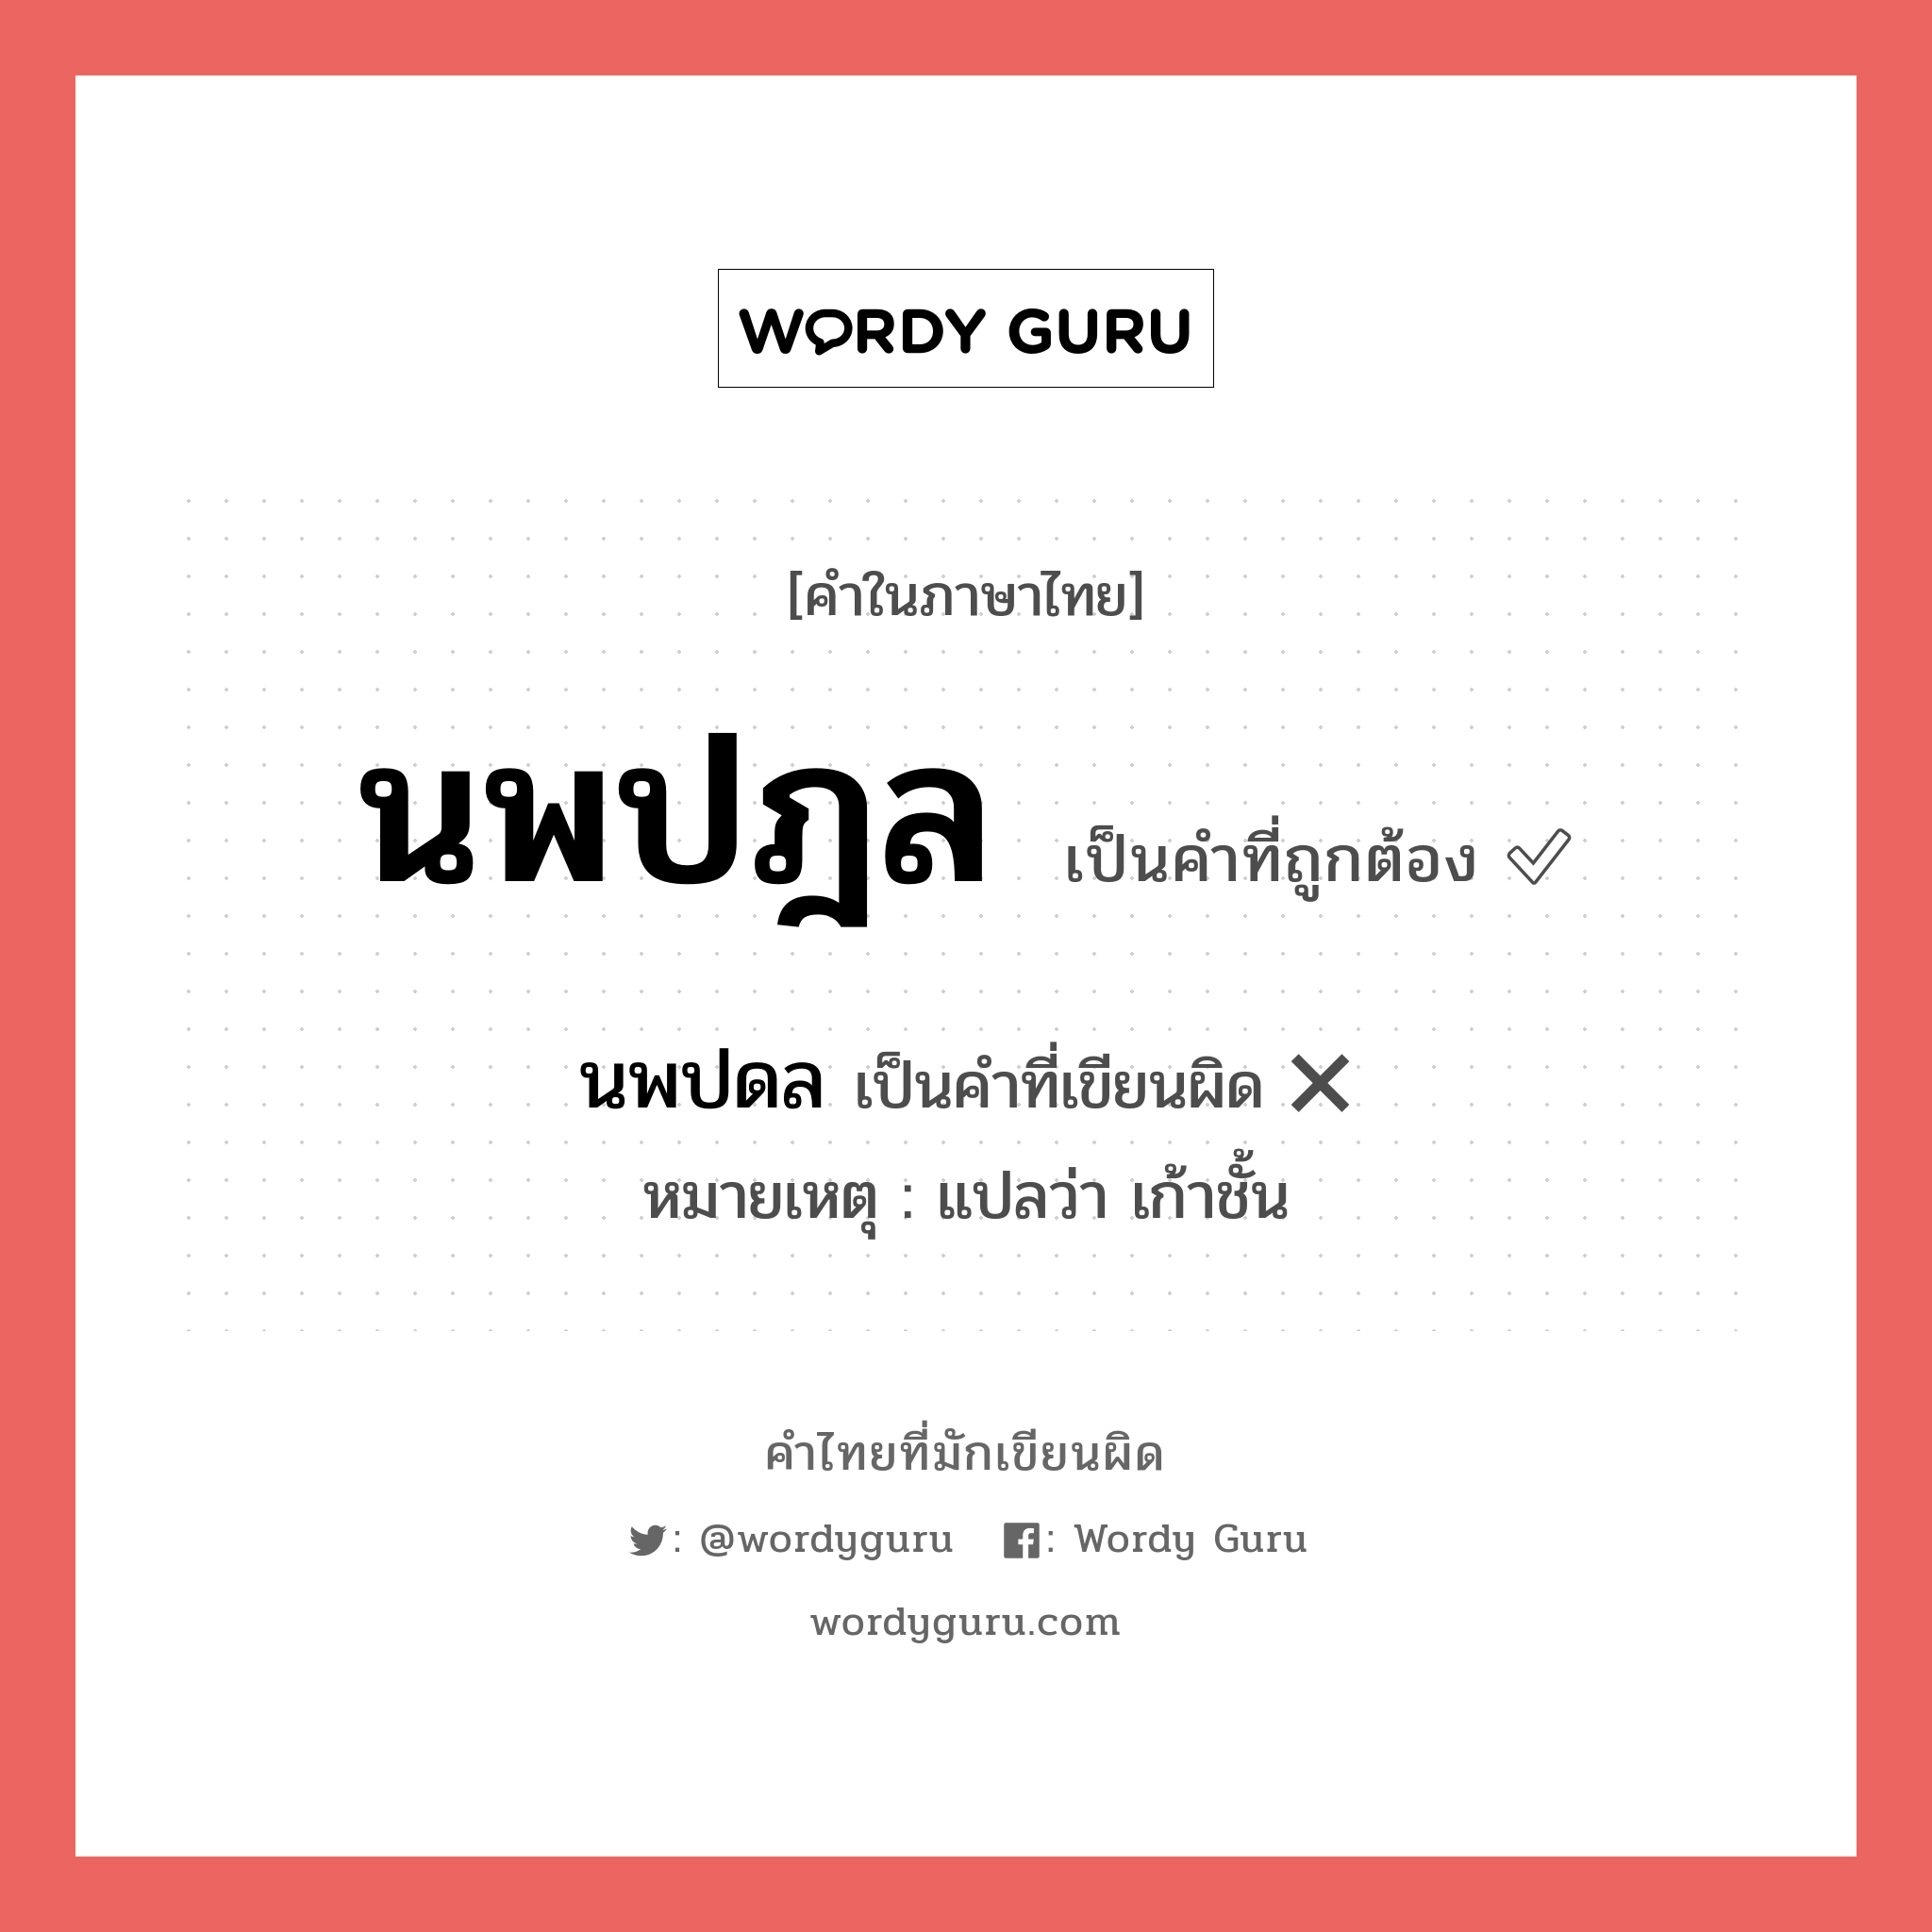 นพปฎล หรือ นพปดล คำไหนเขียนถูก?, คำในภาษาไทยที่มักเขียนผิด นพปฎล คำที่ผิด ❌ นพปดล หมายเหตุ แปลว่า เก้าชั้น